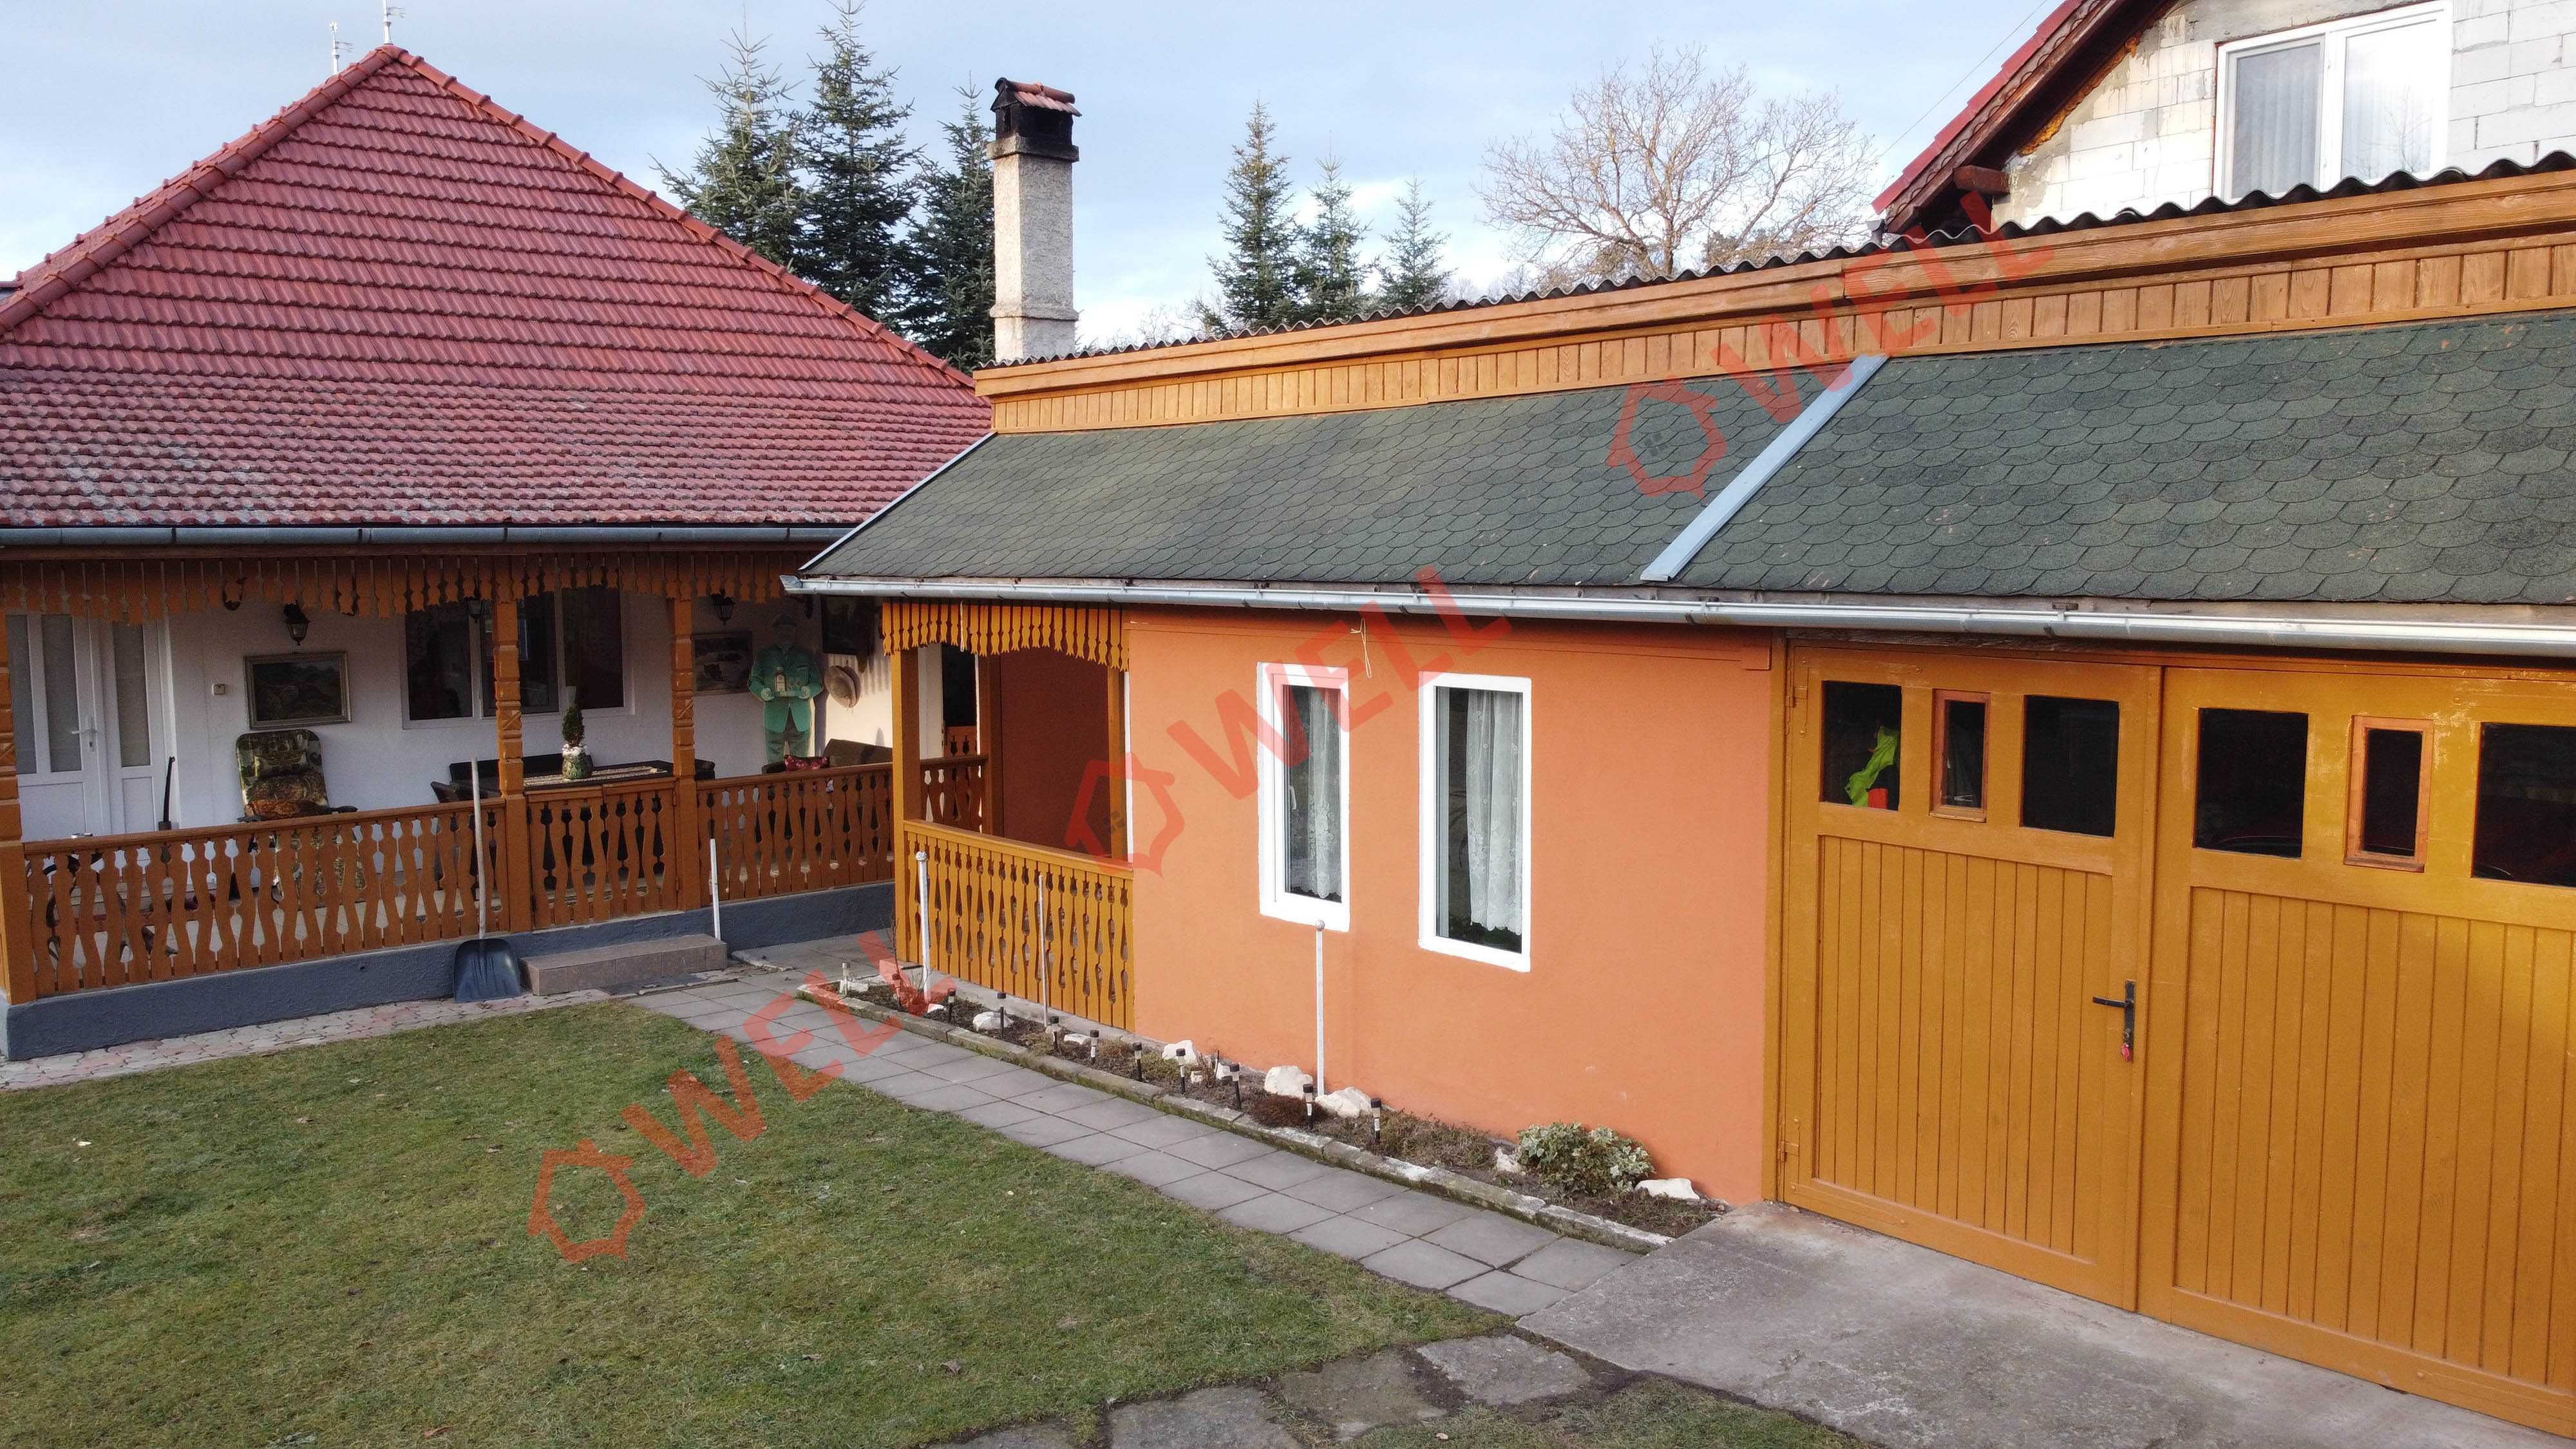 De vânzare casă familială în satul Păpăuți!